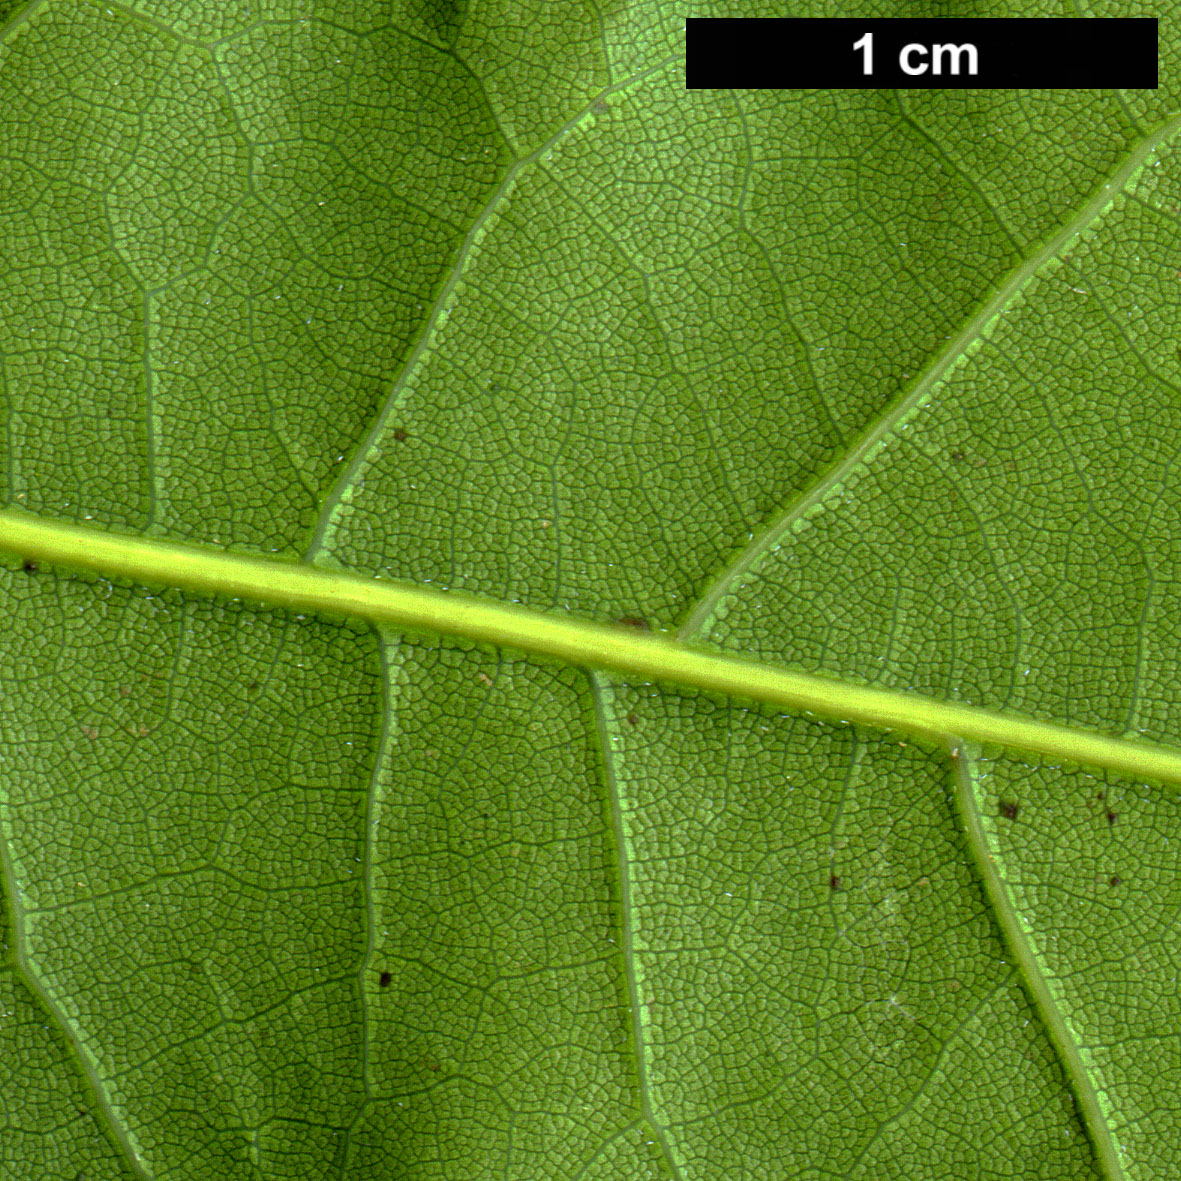 High resolution image: Family: Fagaceae - Genus: Quercus - Taxon: austrina